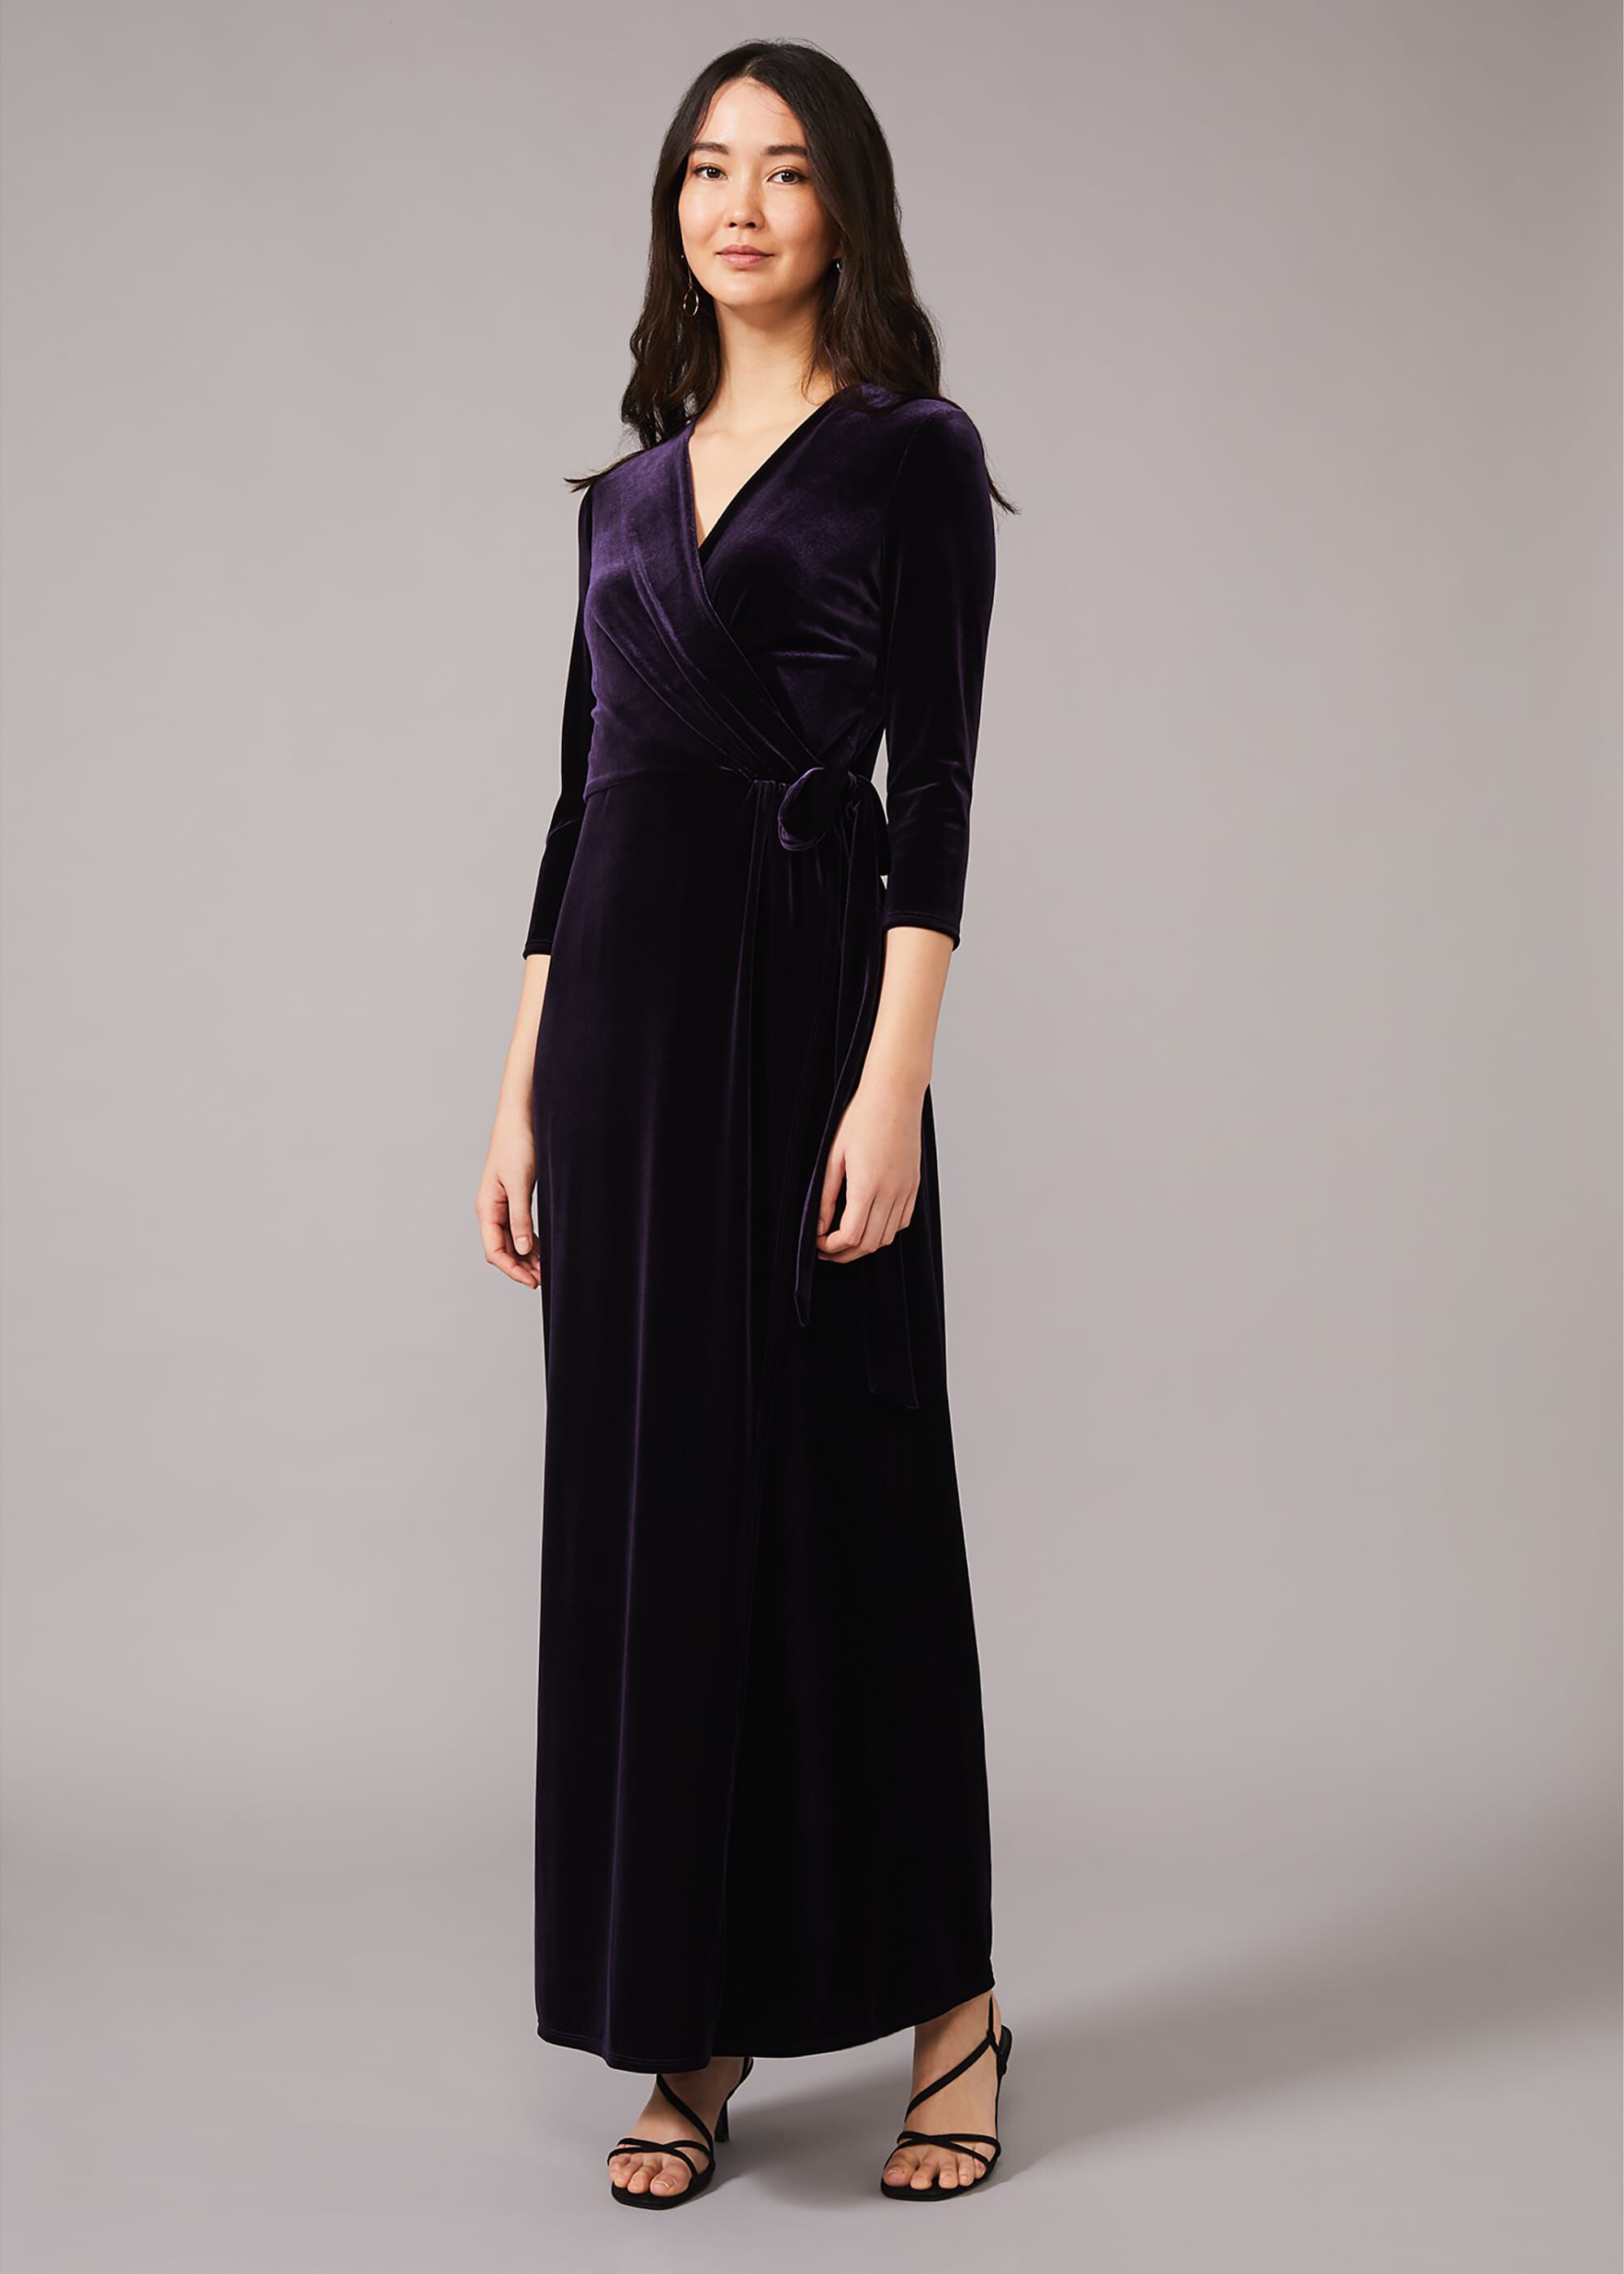 velvet wrap gown Big sale - OFF 76%